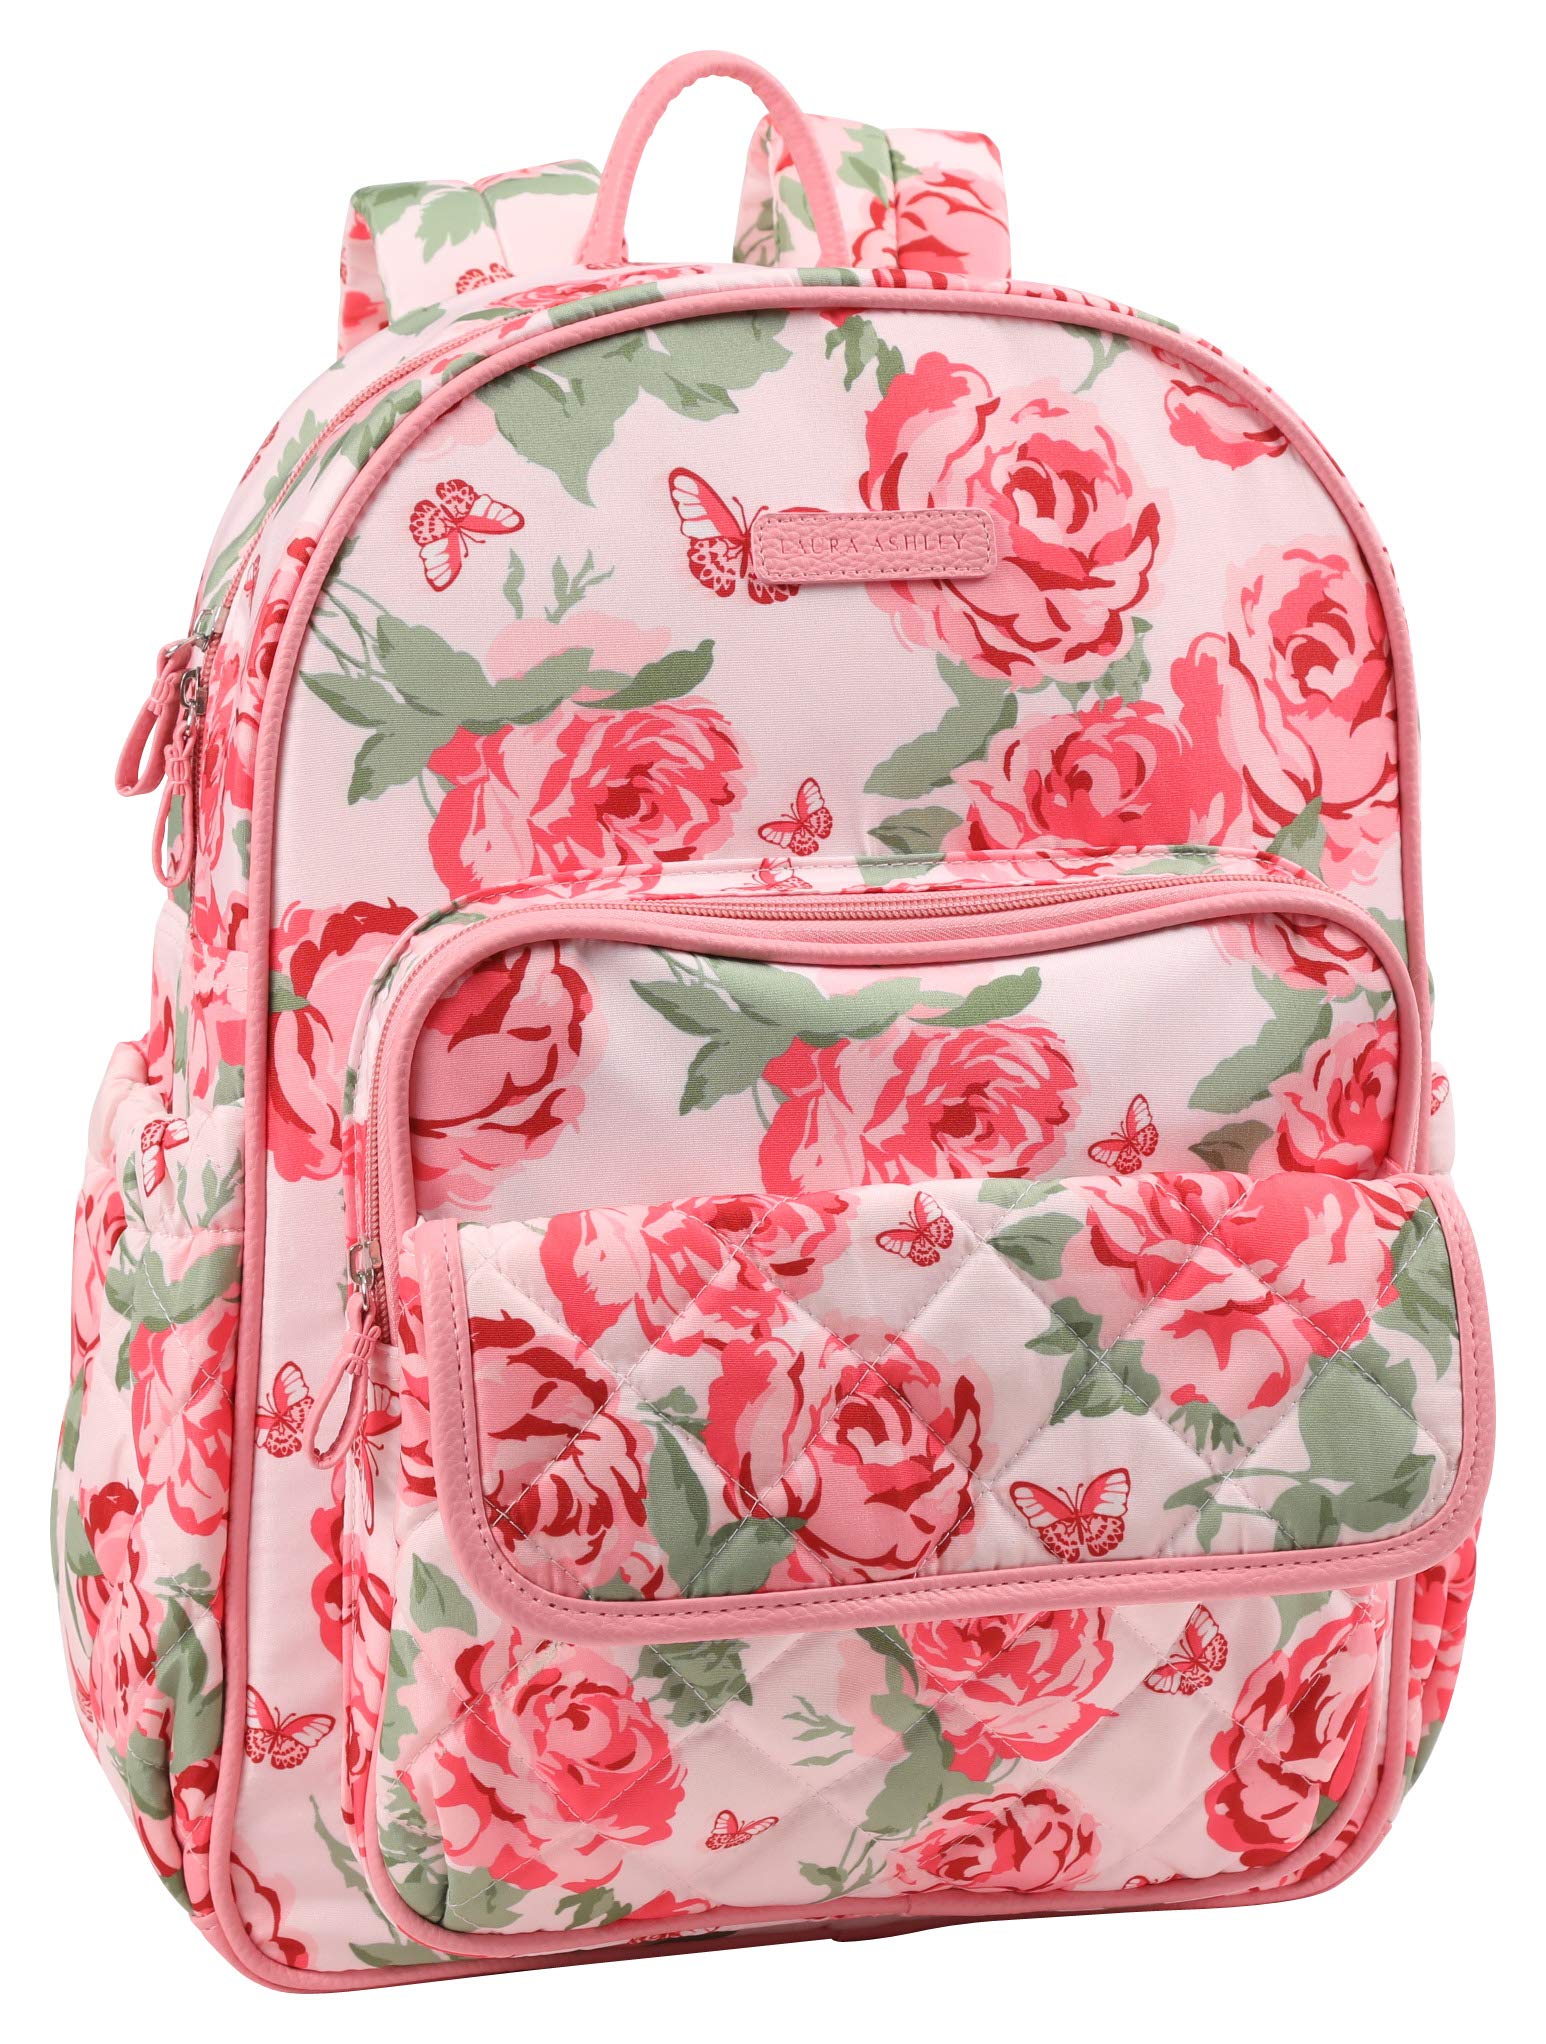 Laura Ashley Backpack Diaper Bag, London Rose Print